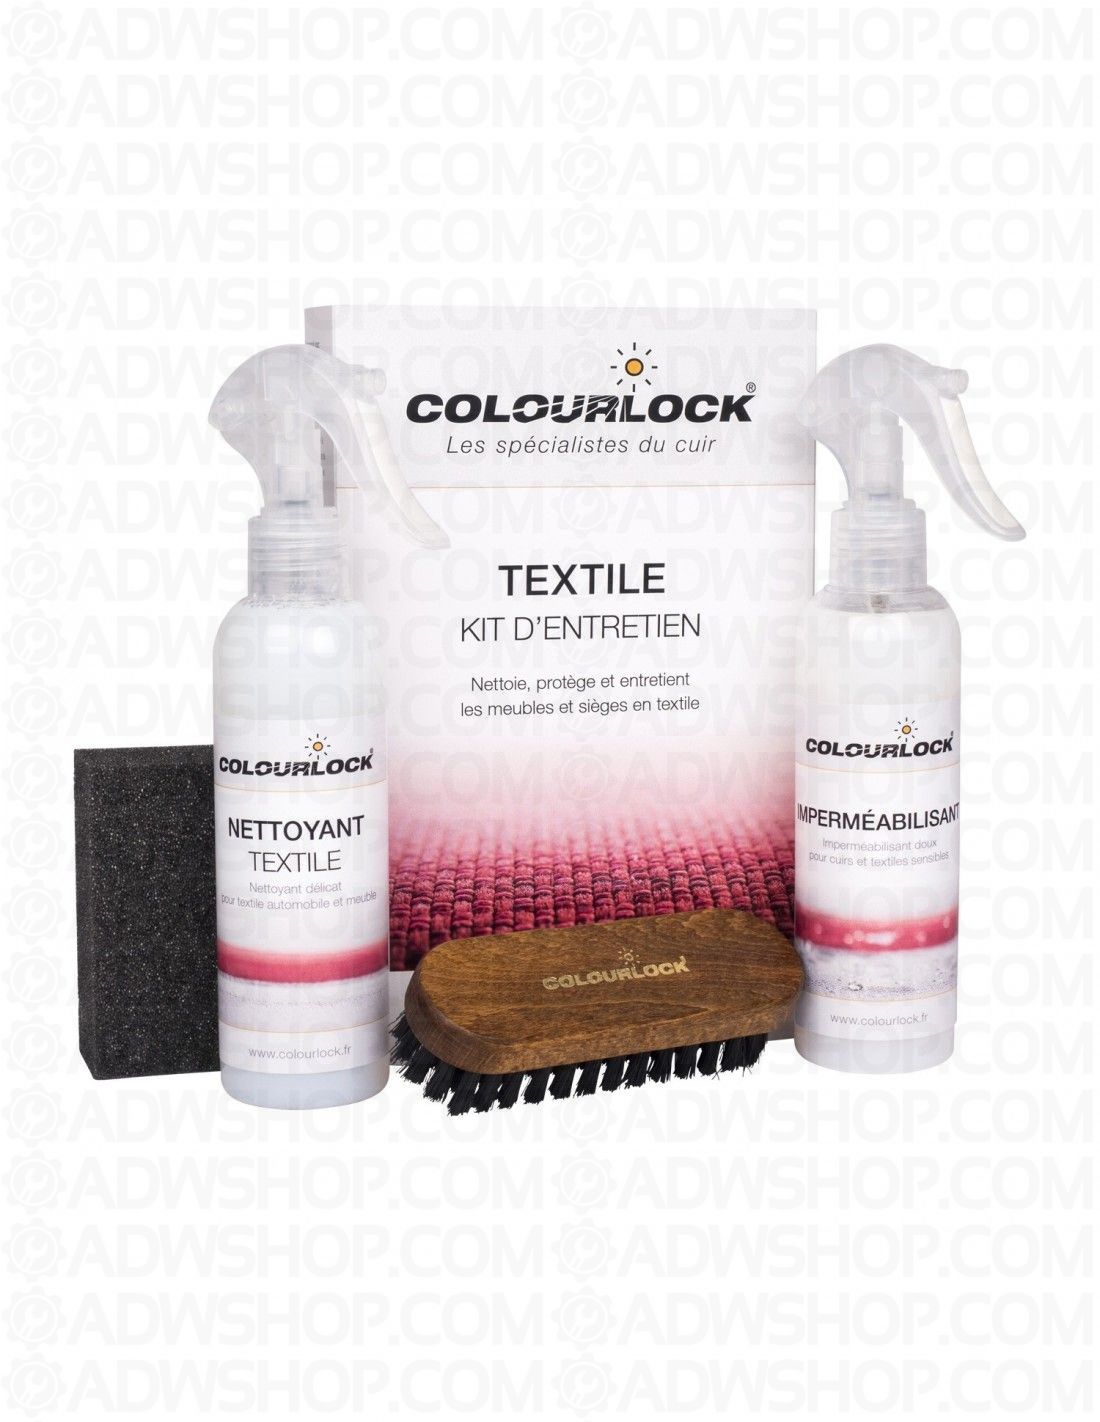 https://www.adwshop.com/4809-thickbox_default/kit-dentretien-colourlock-pour-alcantara-et-textile-avec-impermeabilisant.jpg